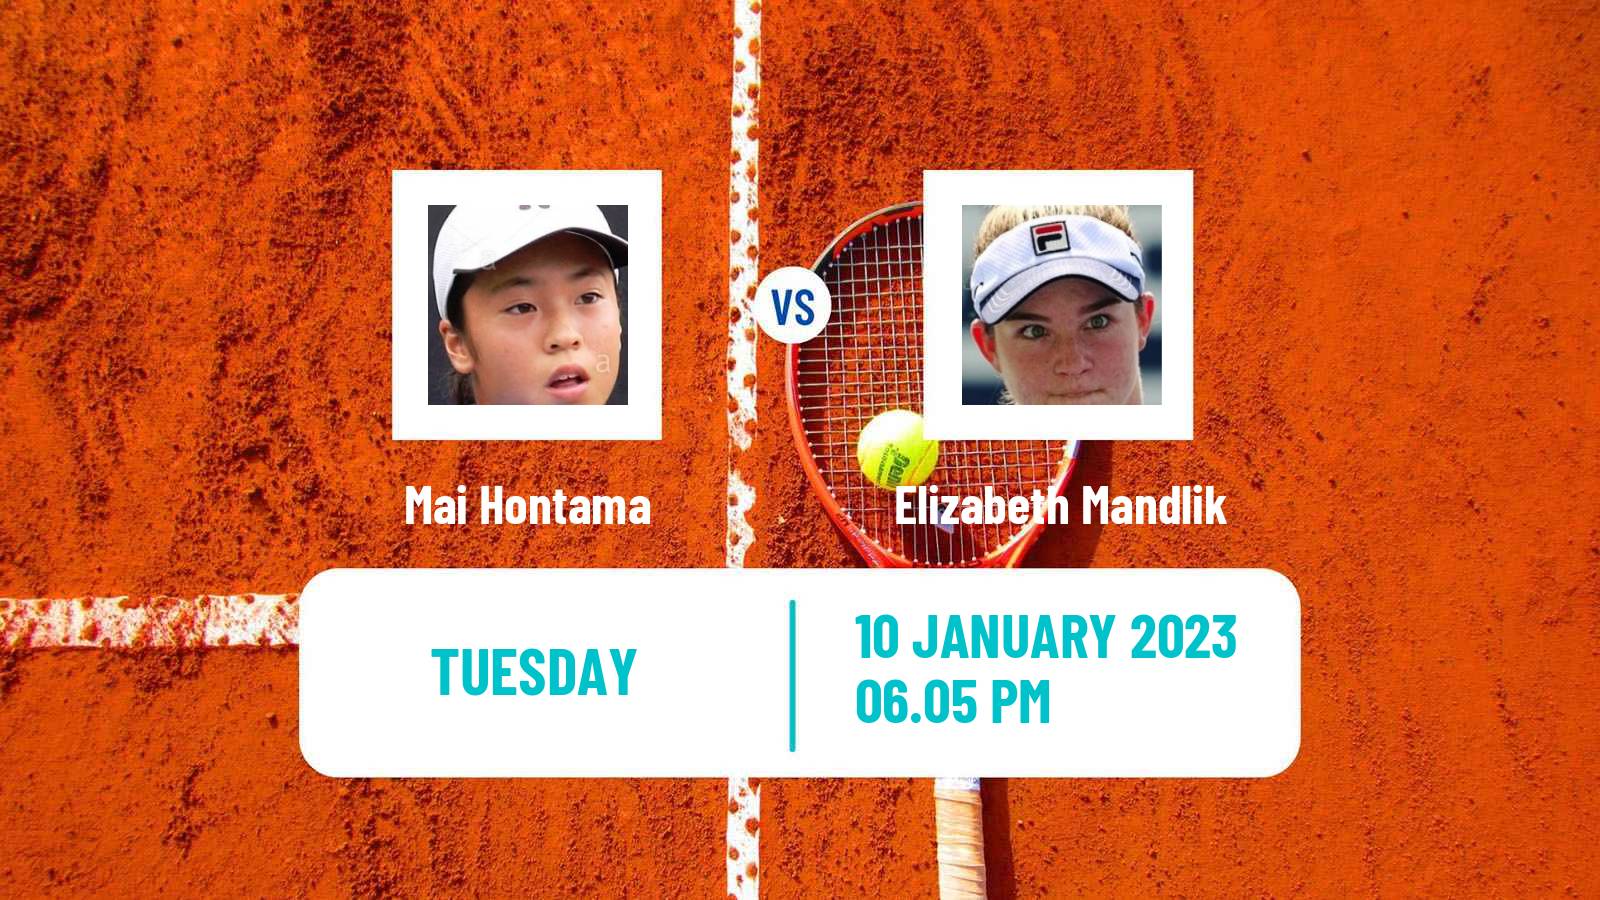 Tennis WTA Australian Open Mai Hontama - Elizabeth Mandlik